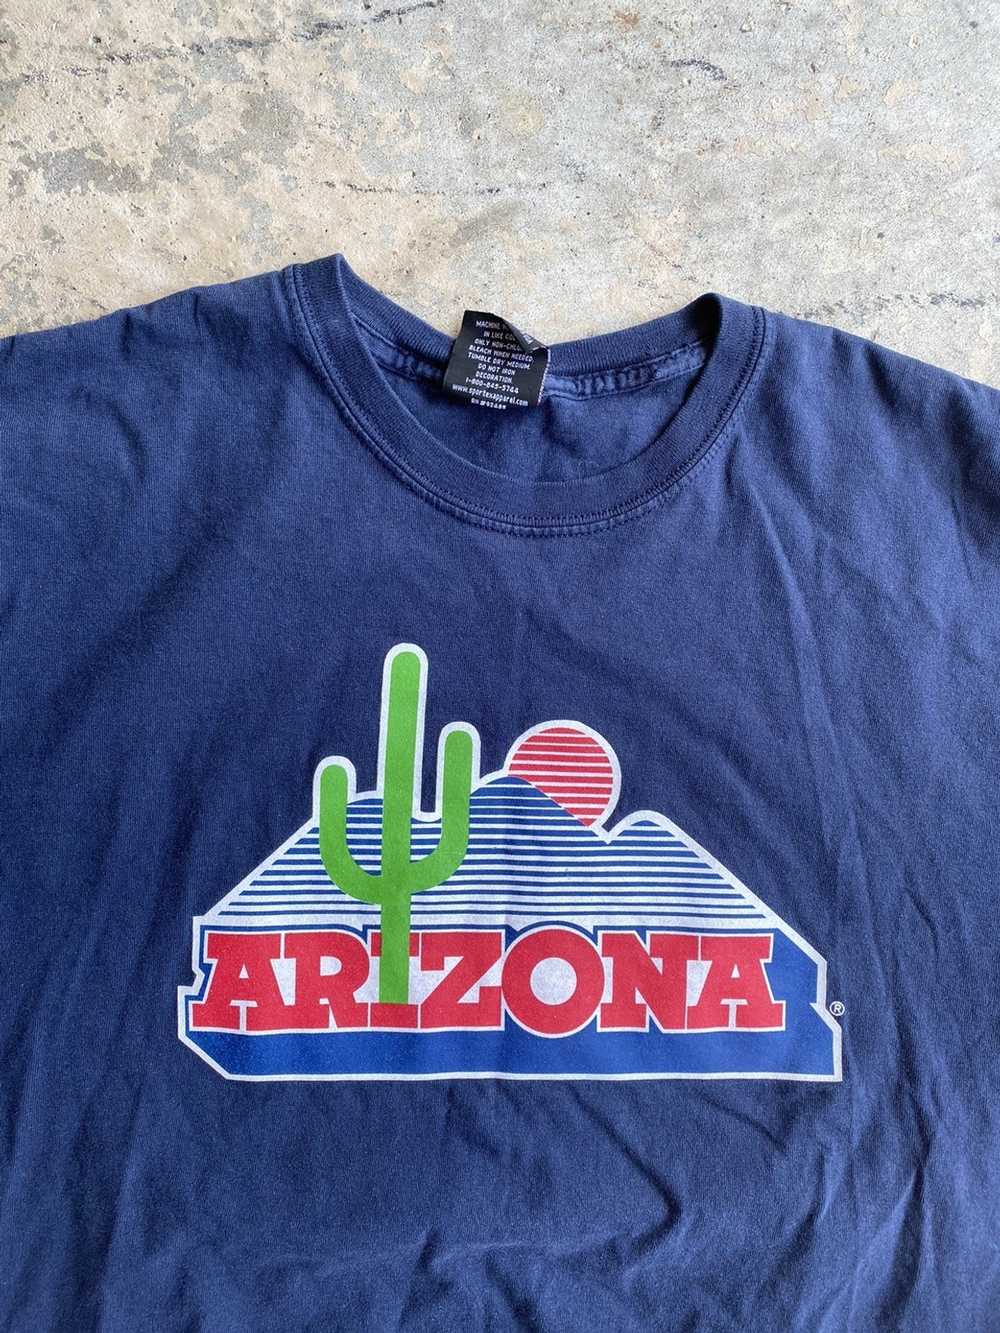 Vintage Vintage Arizona t shirt - image 2